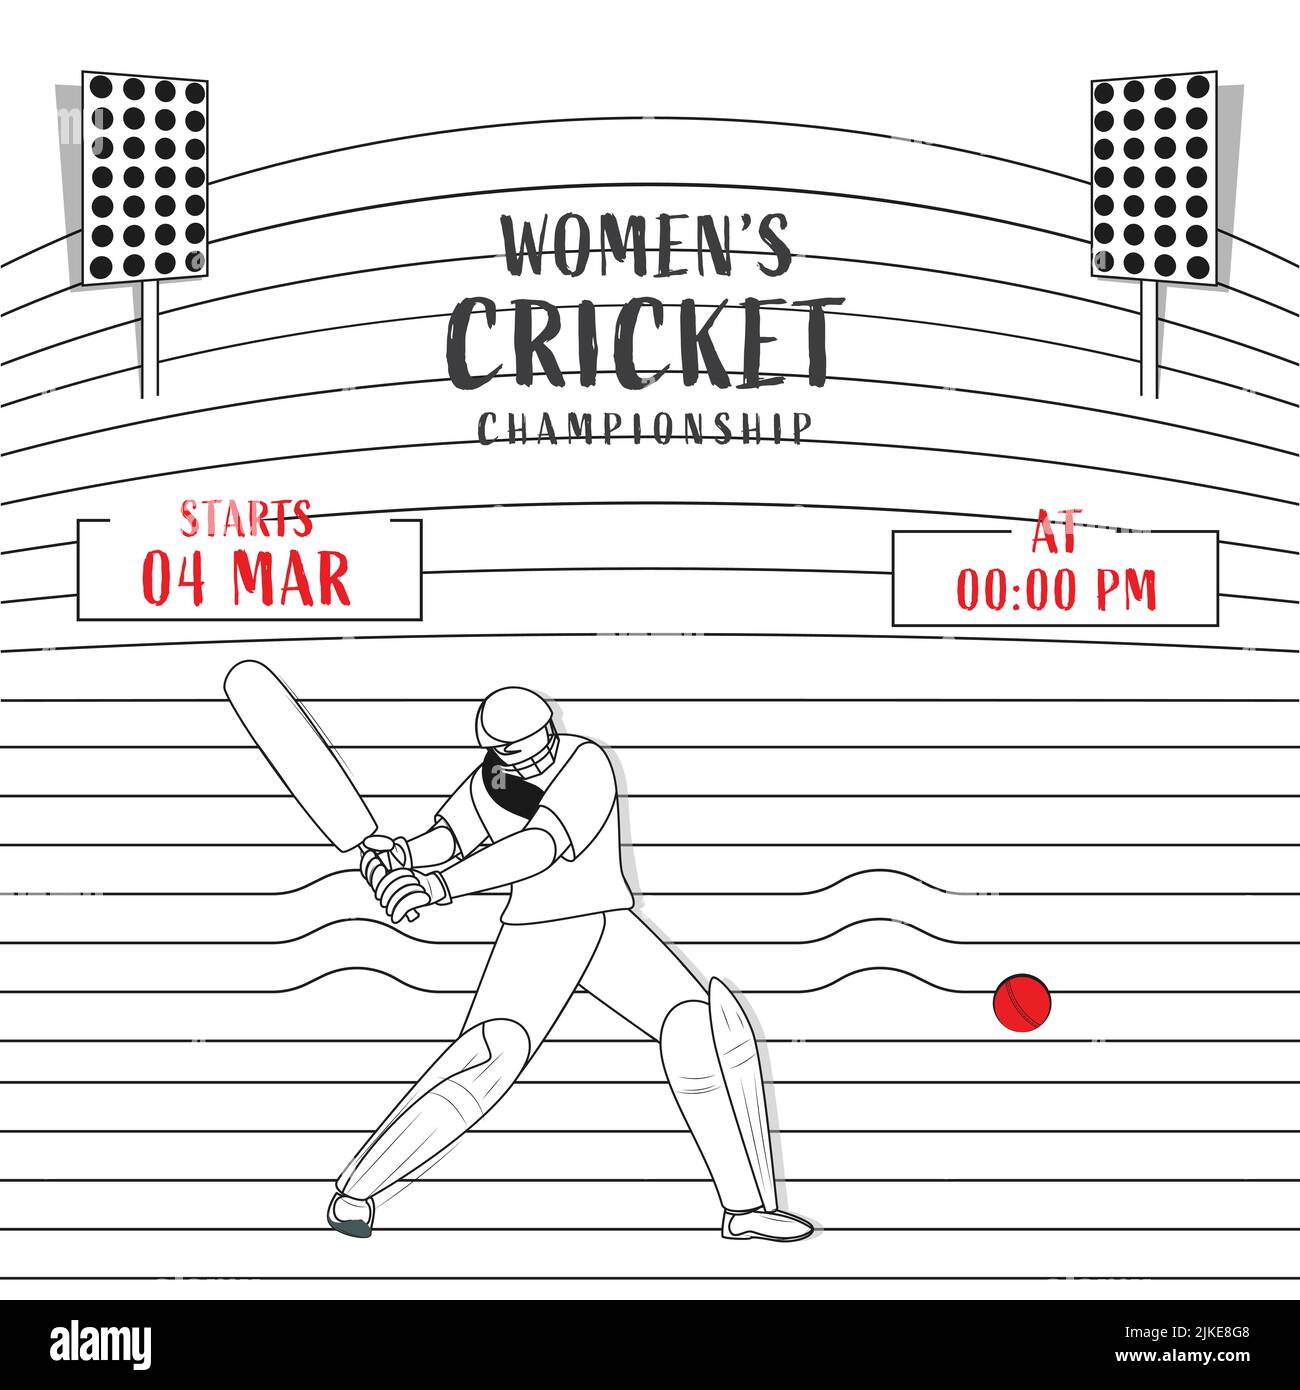 Women's Cricket Championship Konzept mit Linear Style weiblichen Batter Player und Stadium Lights auf White Stripes Hintergrund. Stock Vektor